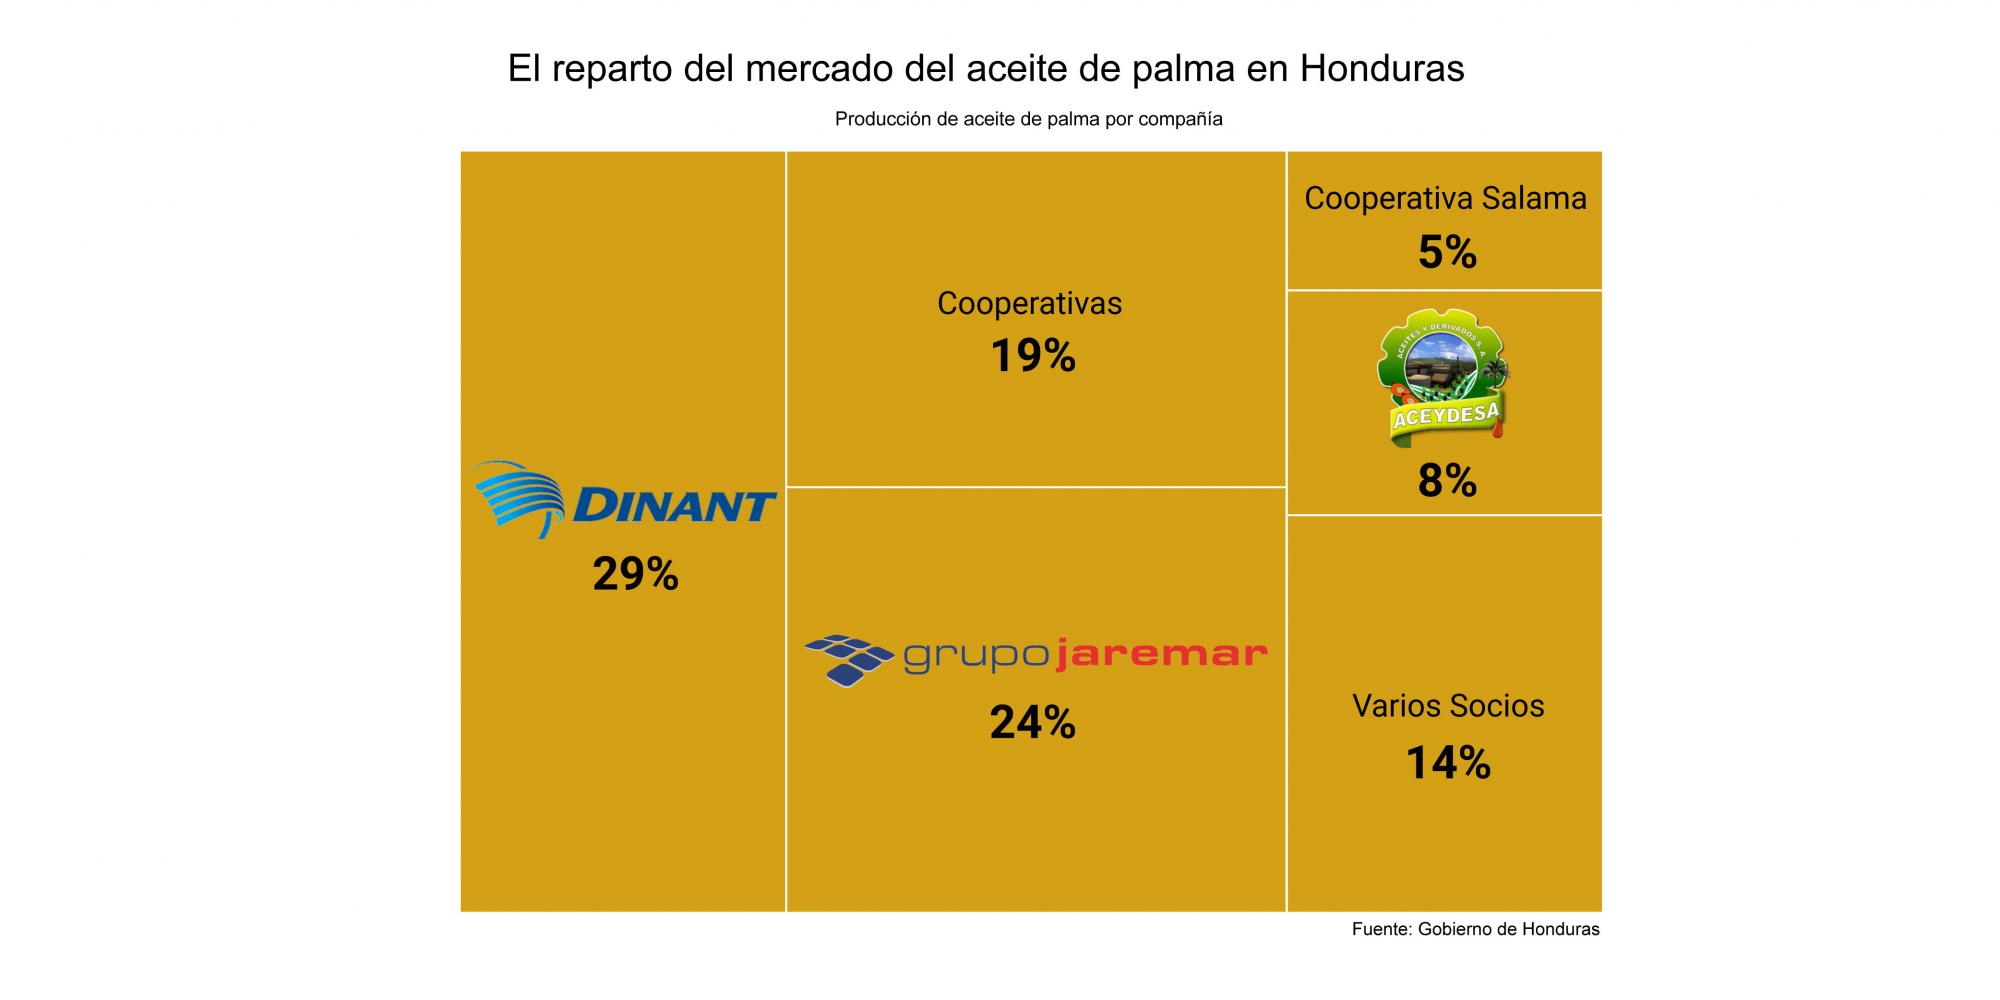 El reparto del mercado de aceite de palma en Honduras.